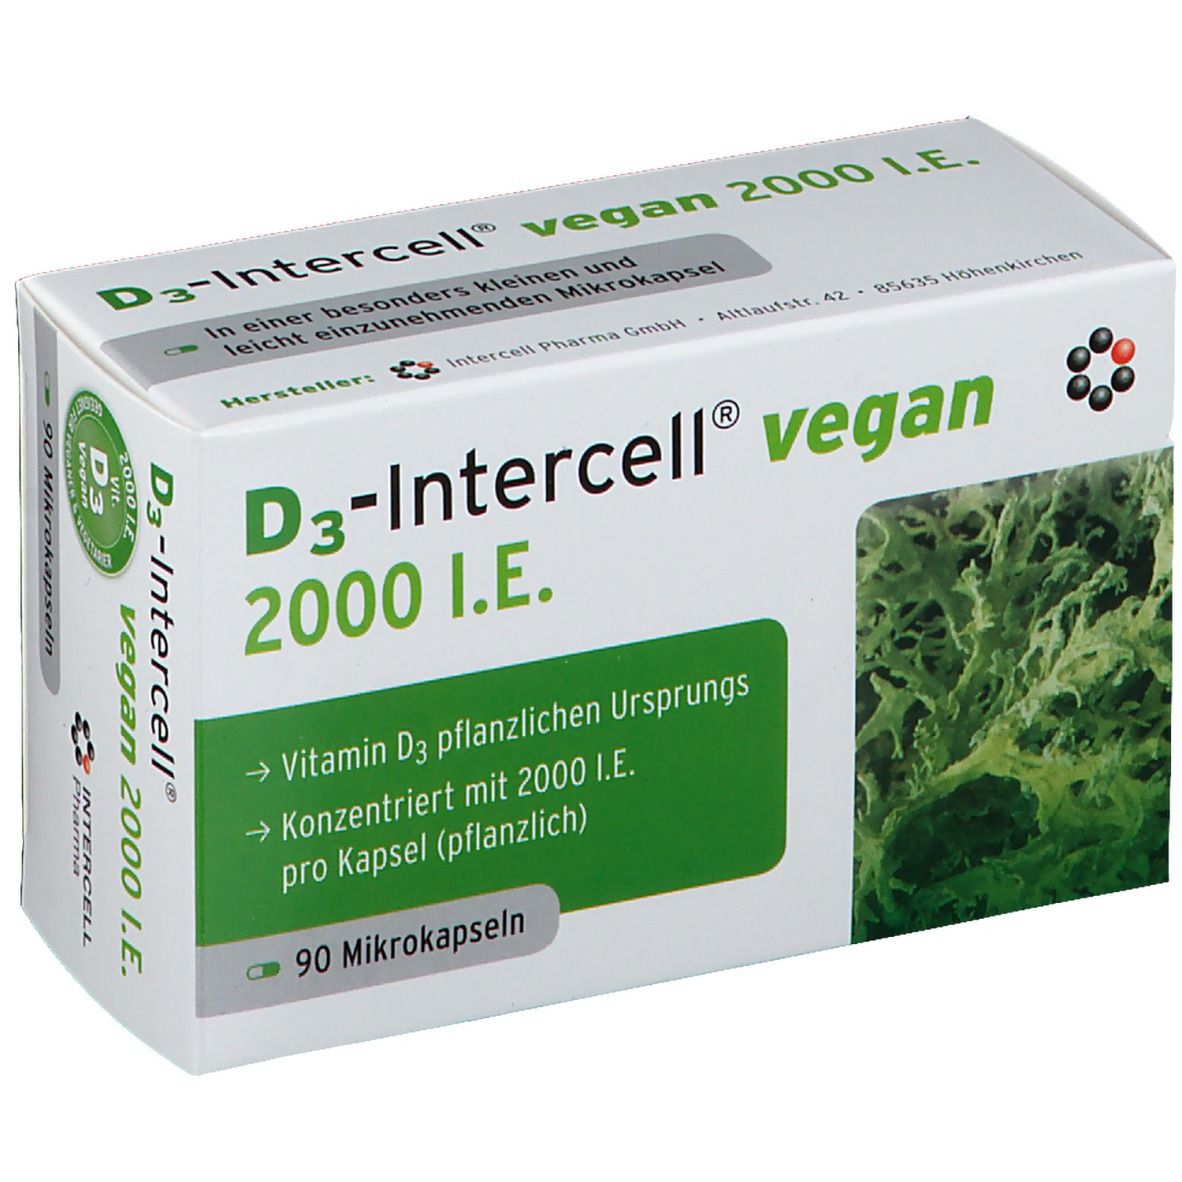 D3 Intercell Vegan 2000 I.E.